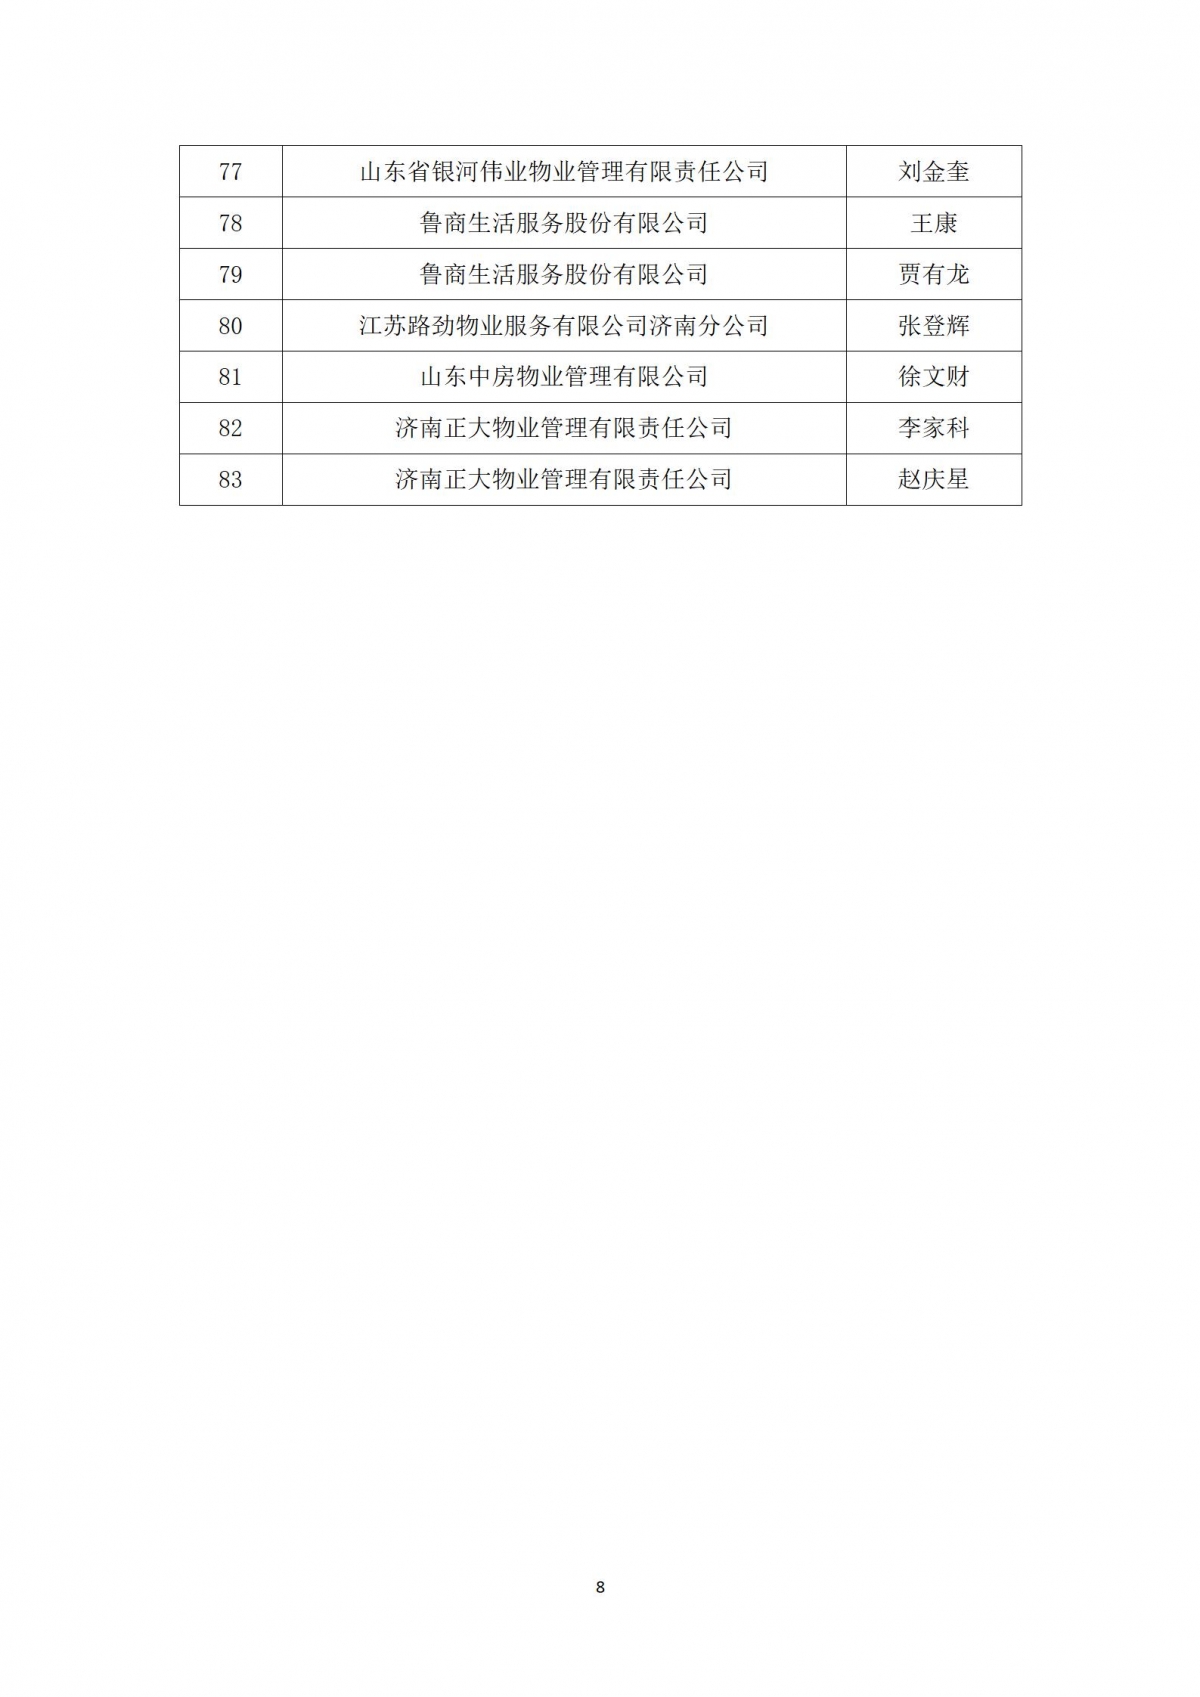 关于“天城杯”第七届济南市物业服务行业职业技能竞赛选手名单的公示_08